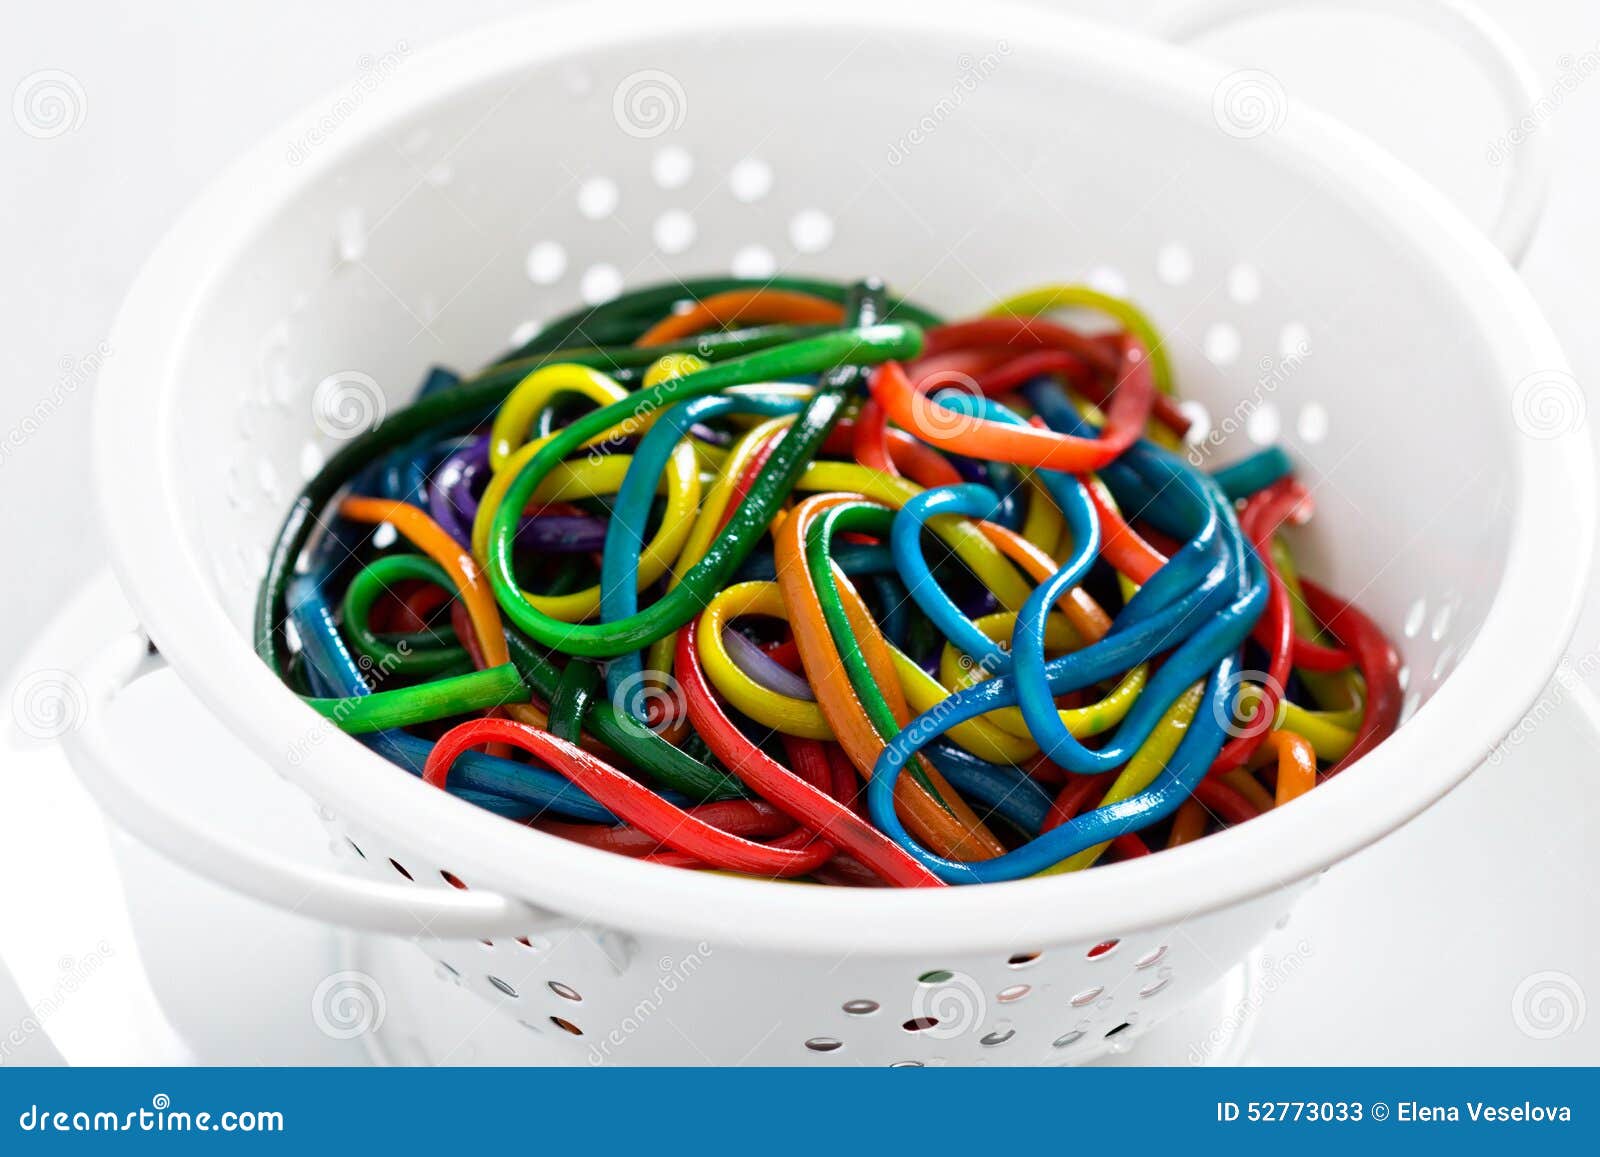 regenboog-gekleurde-spaghetti-een-vergiet-52773033.jpg